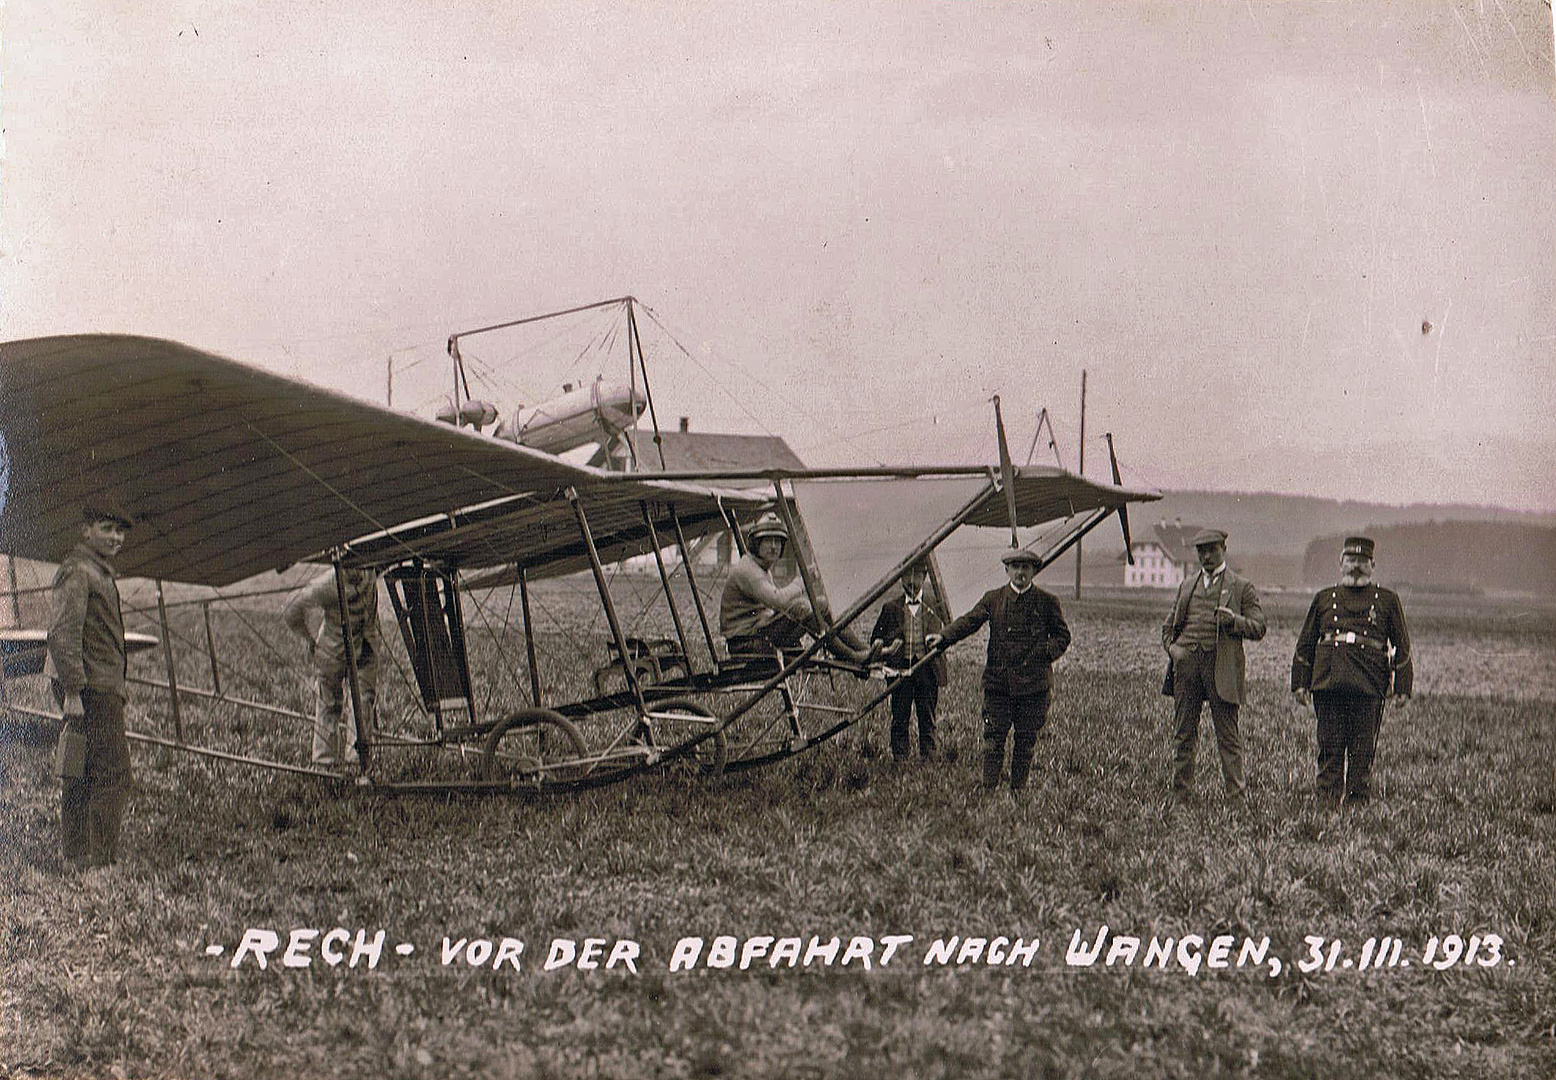 Ernst Rech, Flugpionier, leider kurz darauf abgestürzt und dabei gestorben.